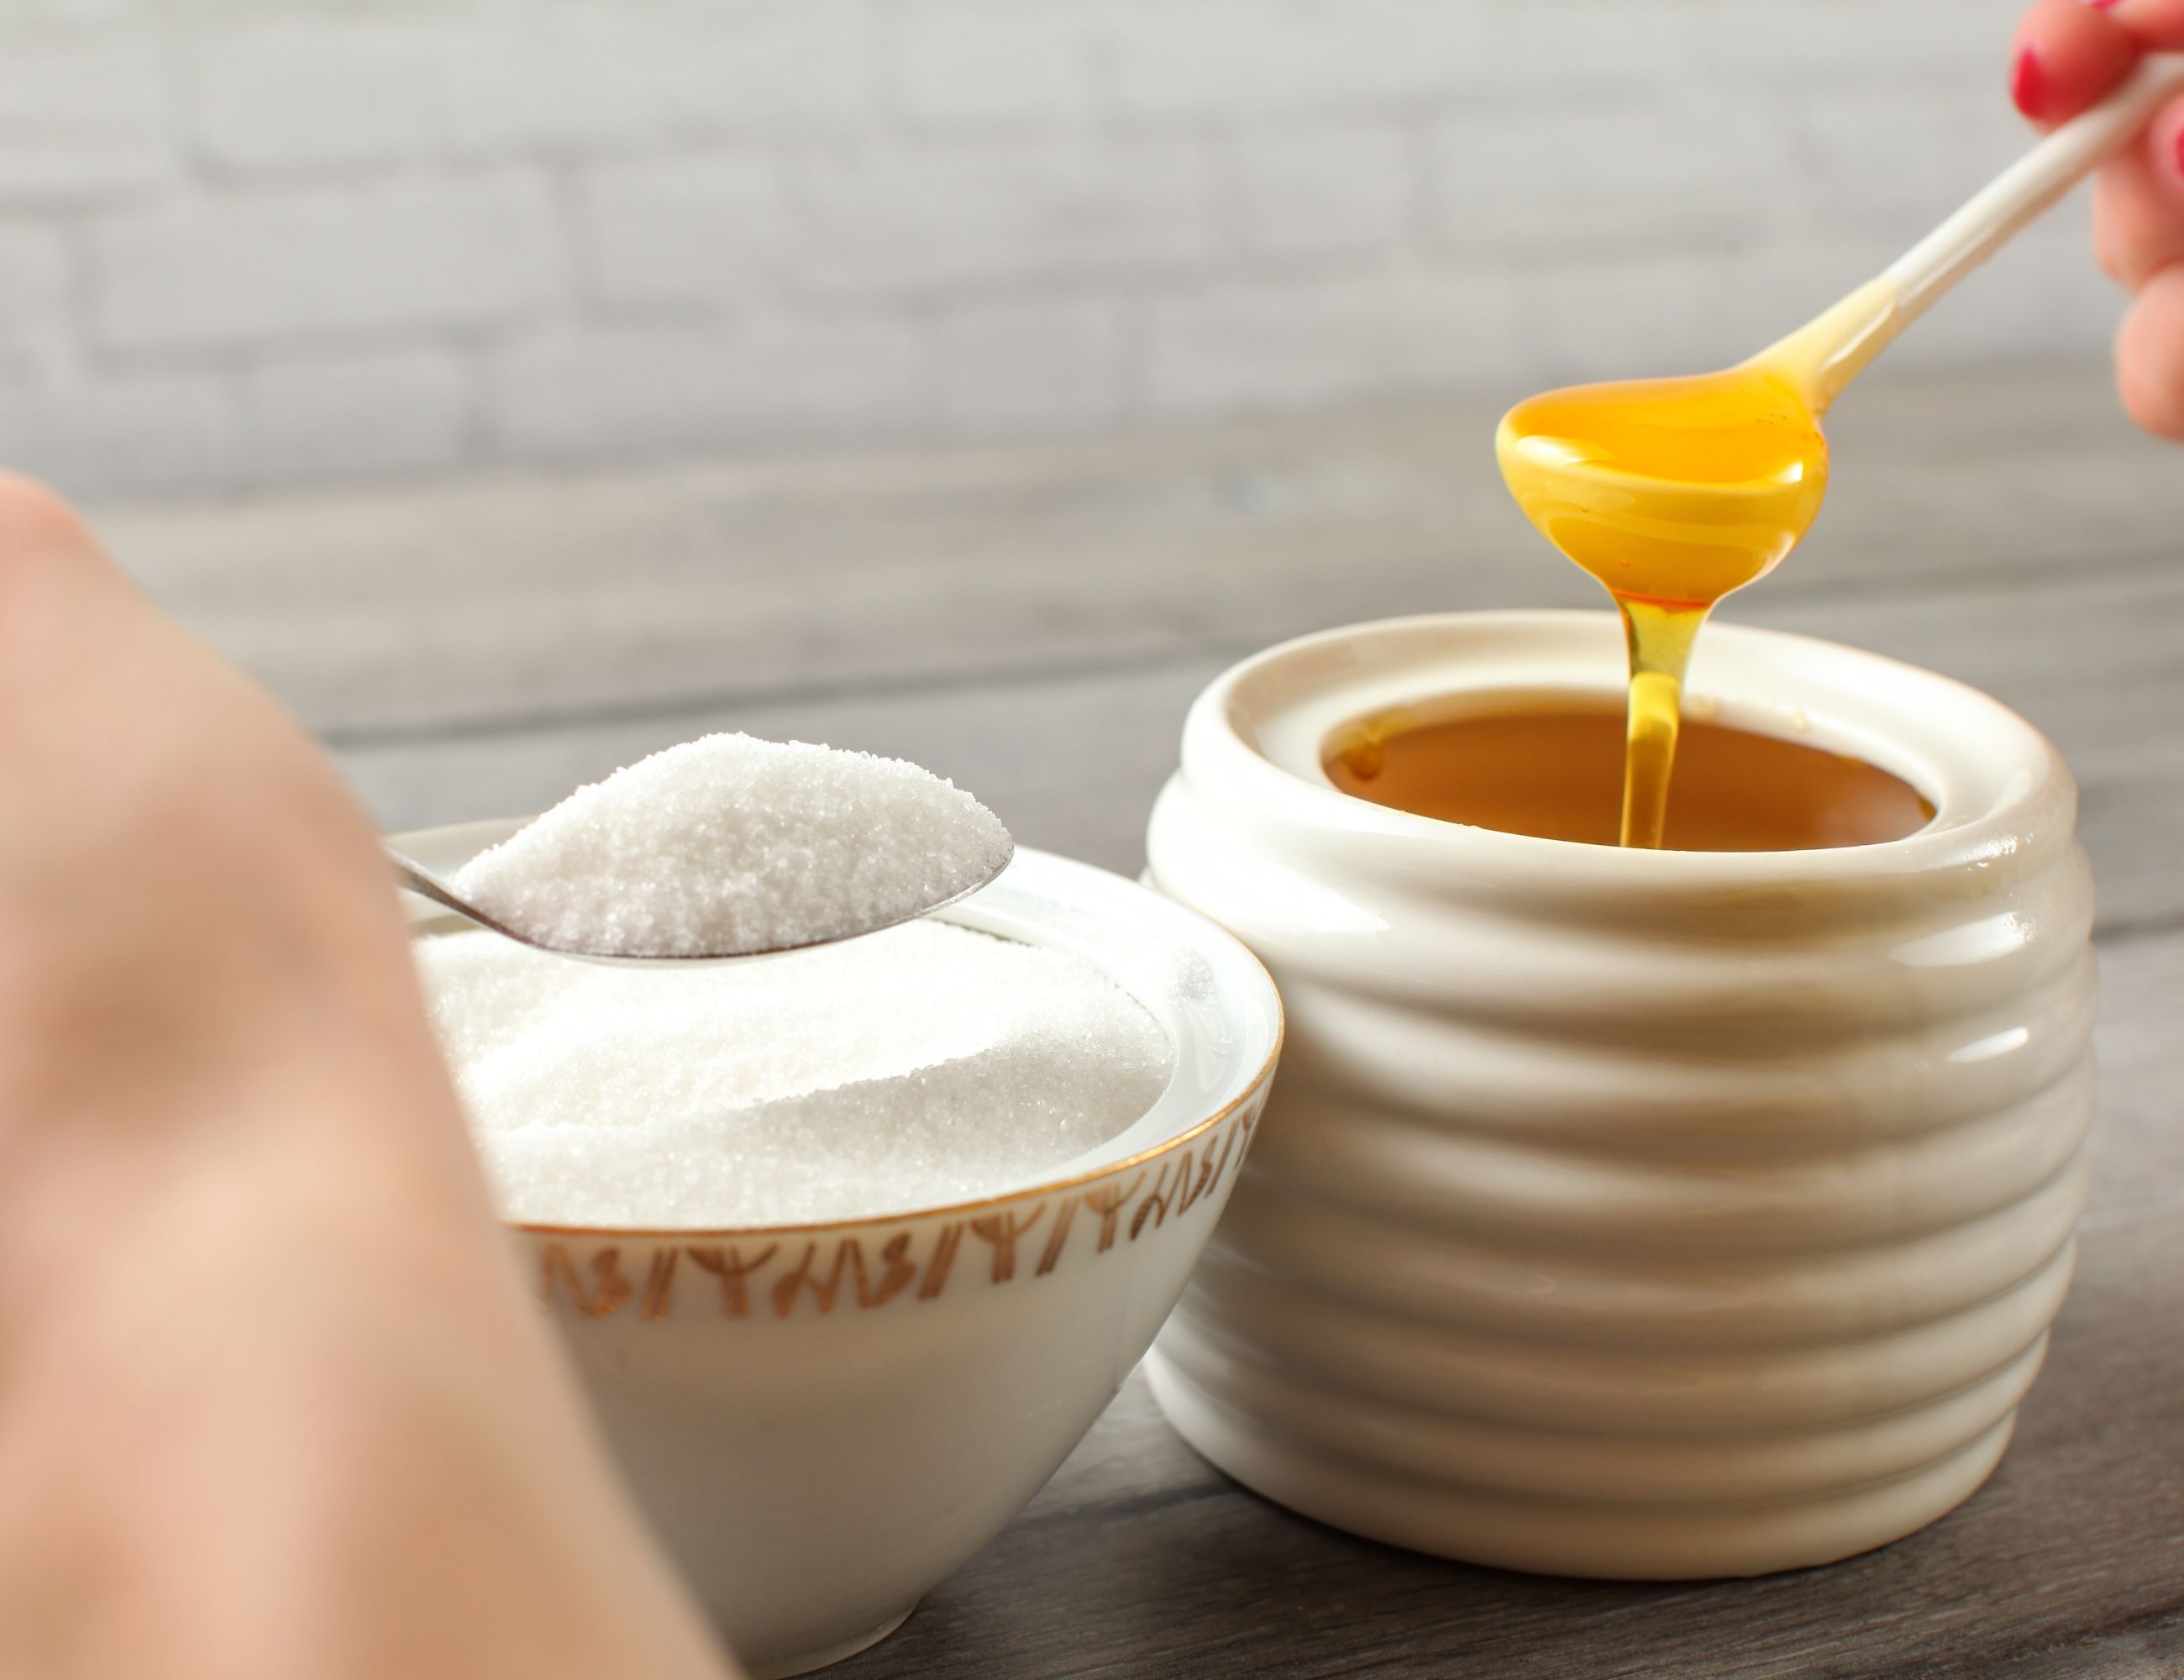 Honey vs sugar in bowls